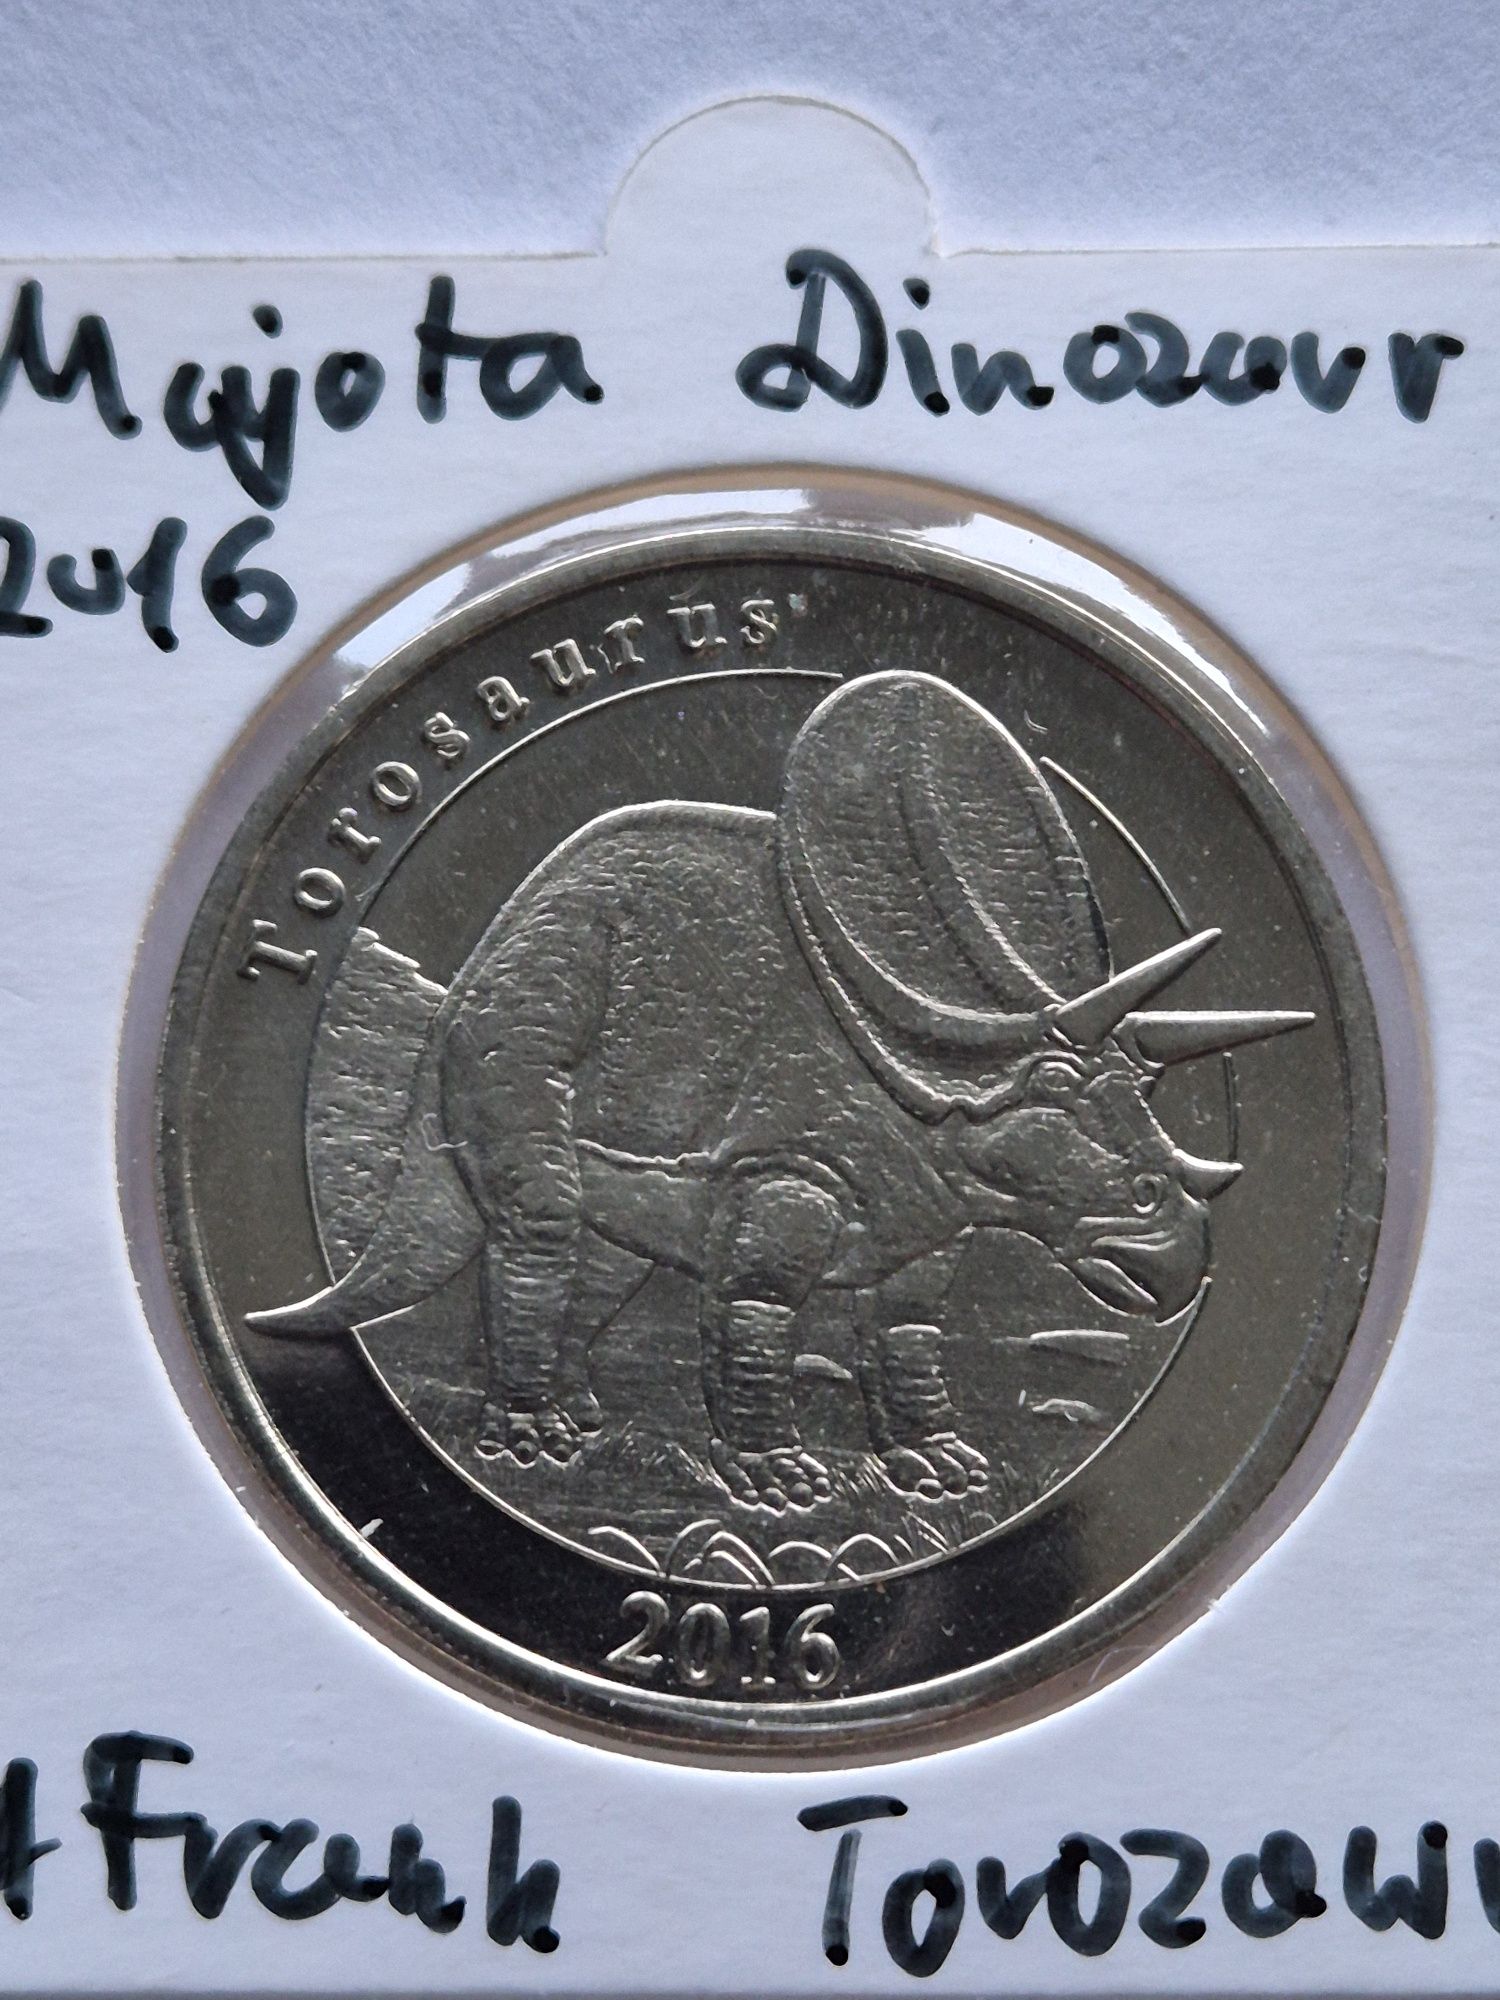 Torozaurus dinozaur moneta mayotte 2016 rok 1 frank z dinozaurem